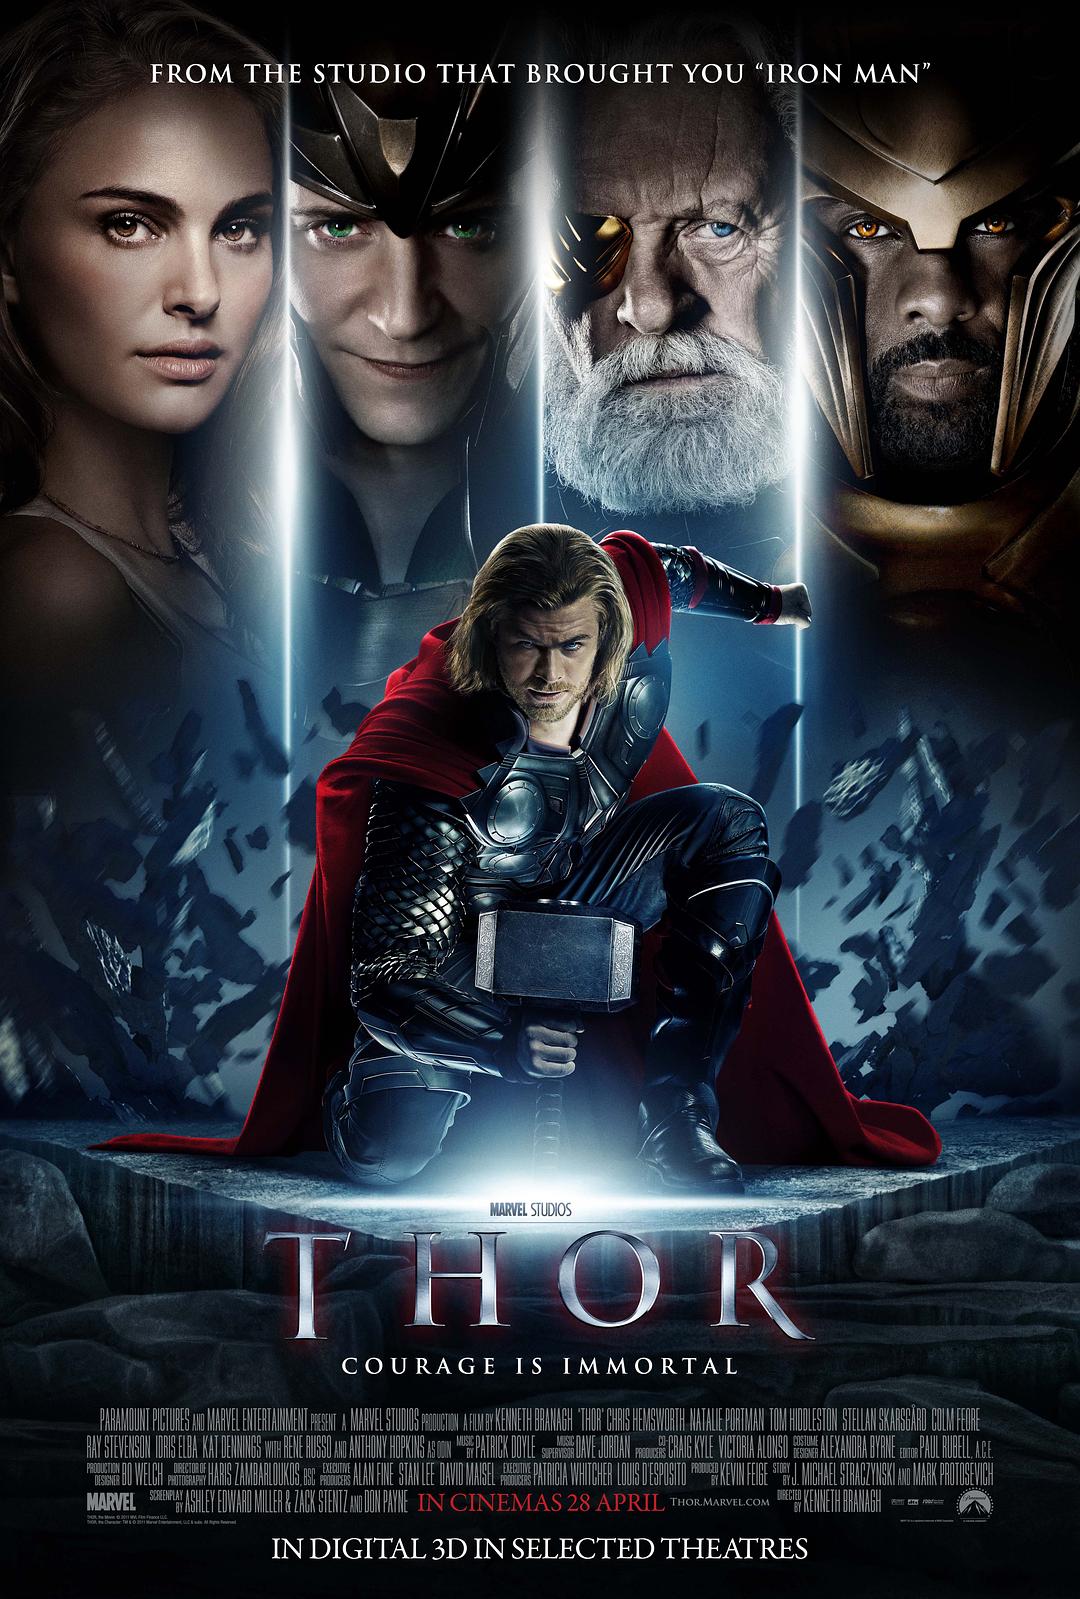 雷神.Thor.2011.BD3D.1080p.BluRay.REMUX.AVC.DTS-HD.MA.7.1-Asmo 41.82GB